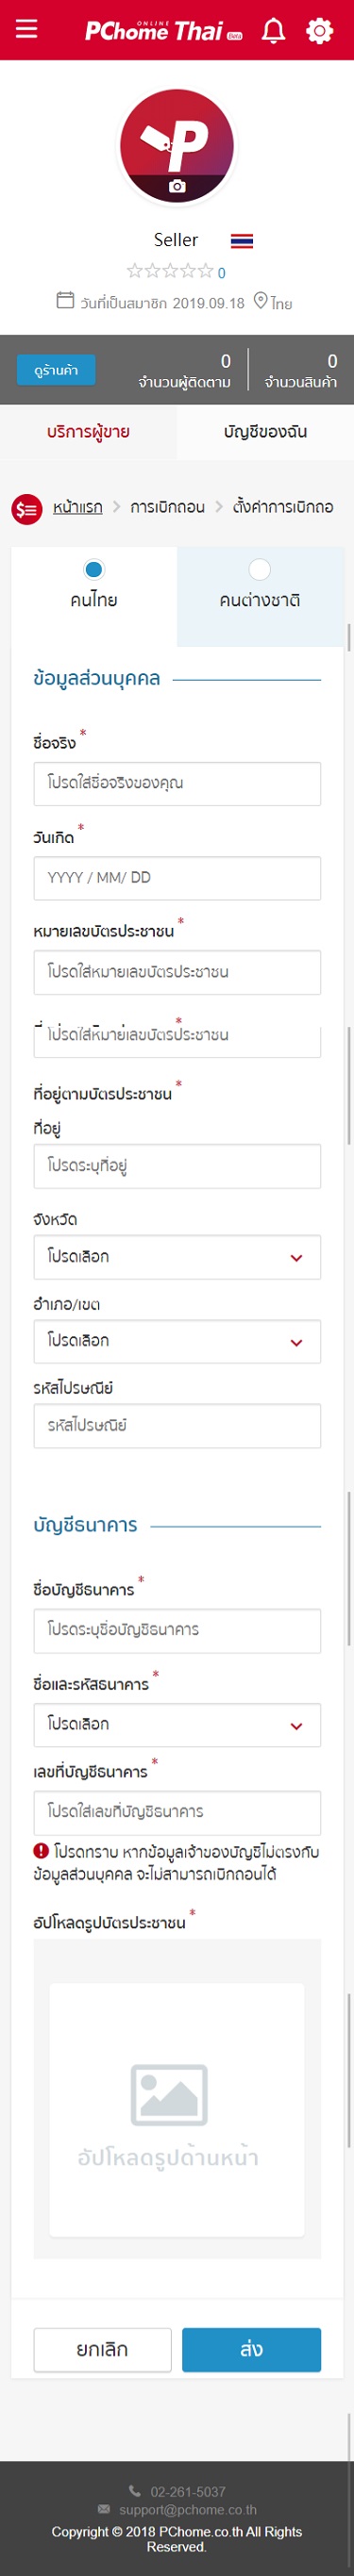 STEP 05-1. 若為泰國公民，需上傳泰國身分證，並填寫銀行戶名和個人姓名相同的銀行帳號，否則無法進行提領。